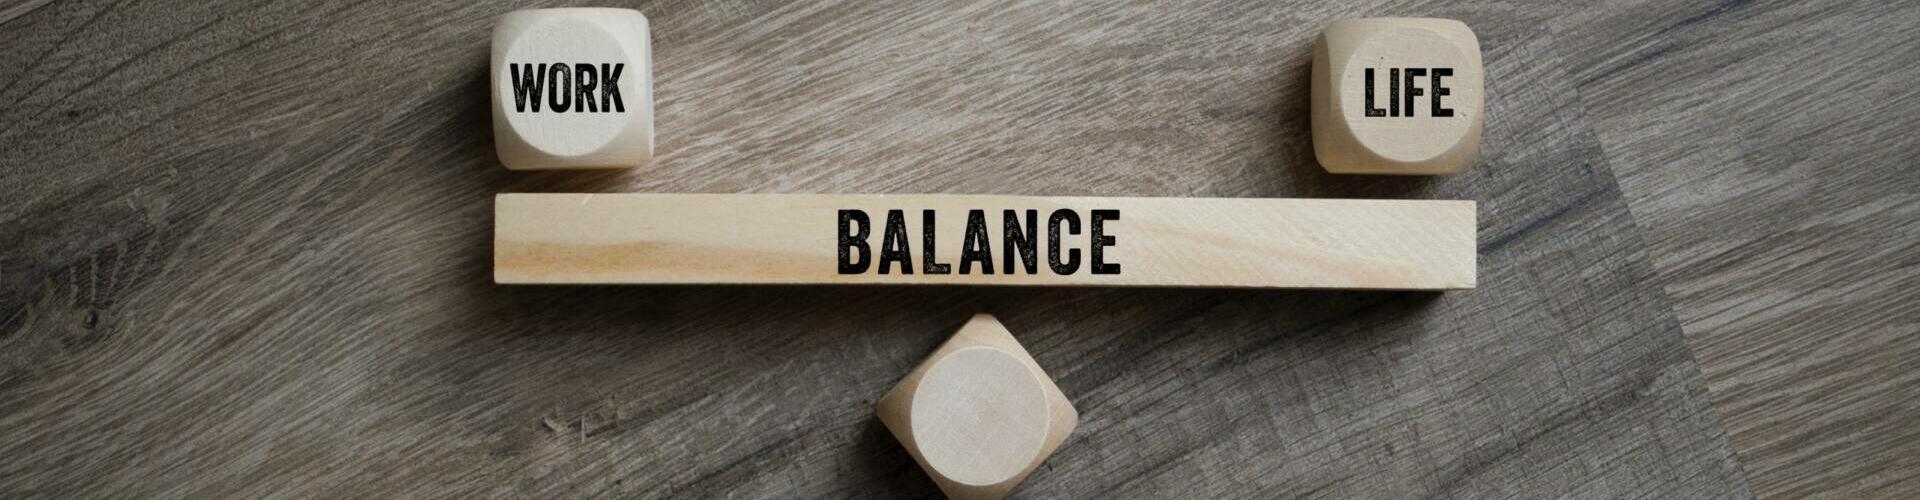 Work-Life-Balance ist Mitarbeitern wichtig